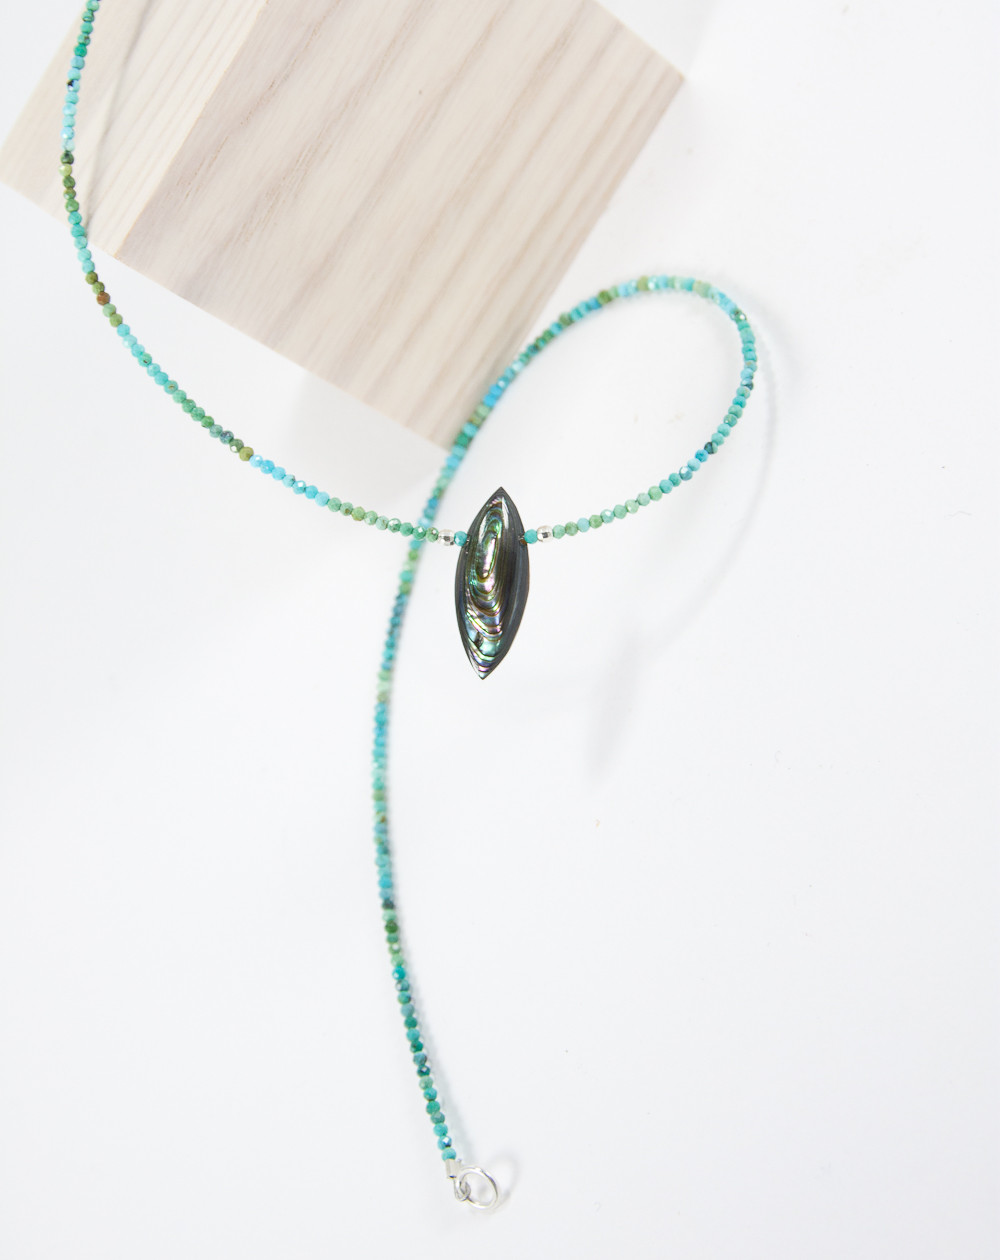 Collier en Turquoise, pendentif en Nacre de Paua, créateurs Français, Sanùk Création, Bayonne